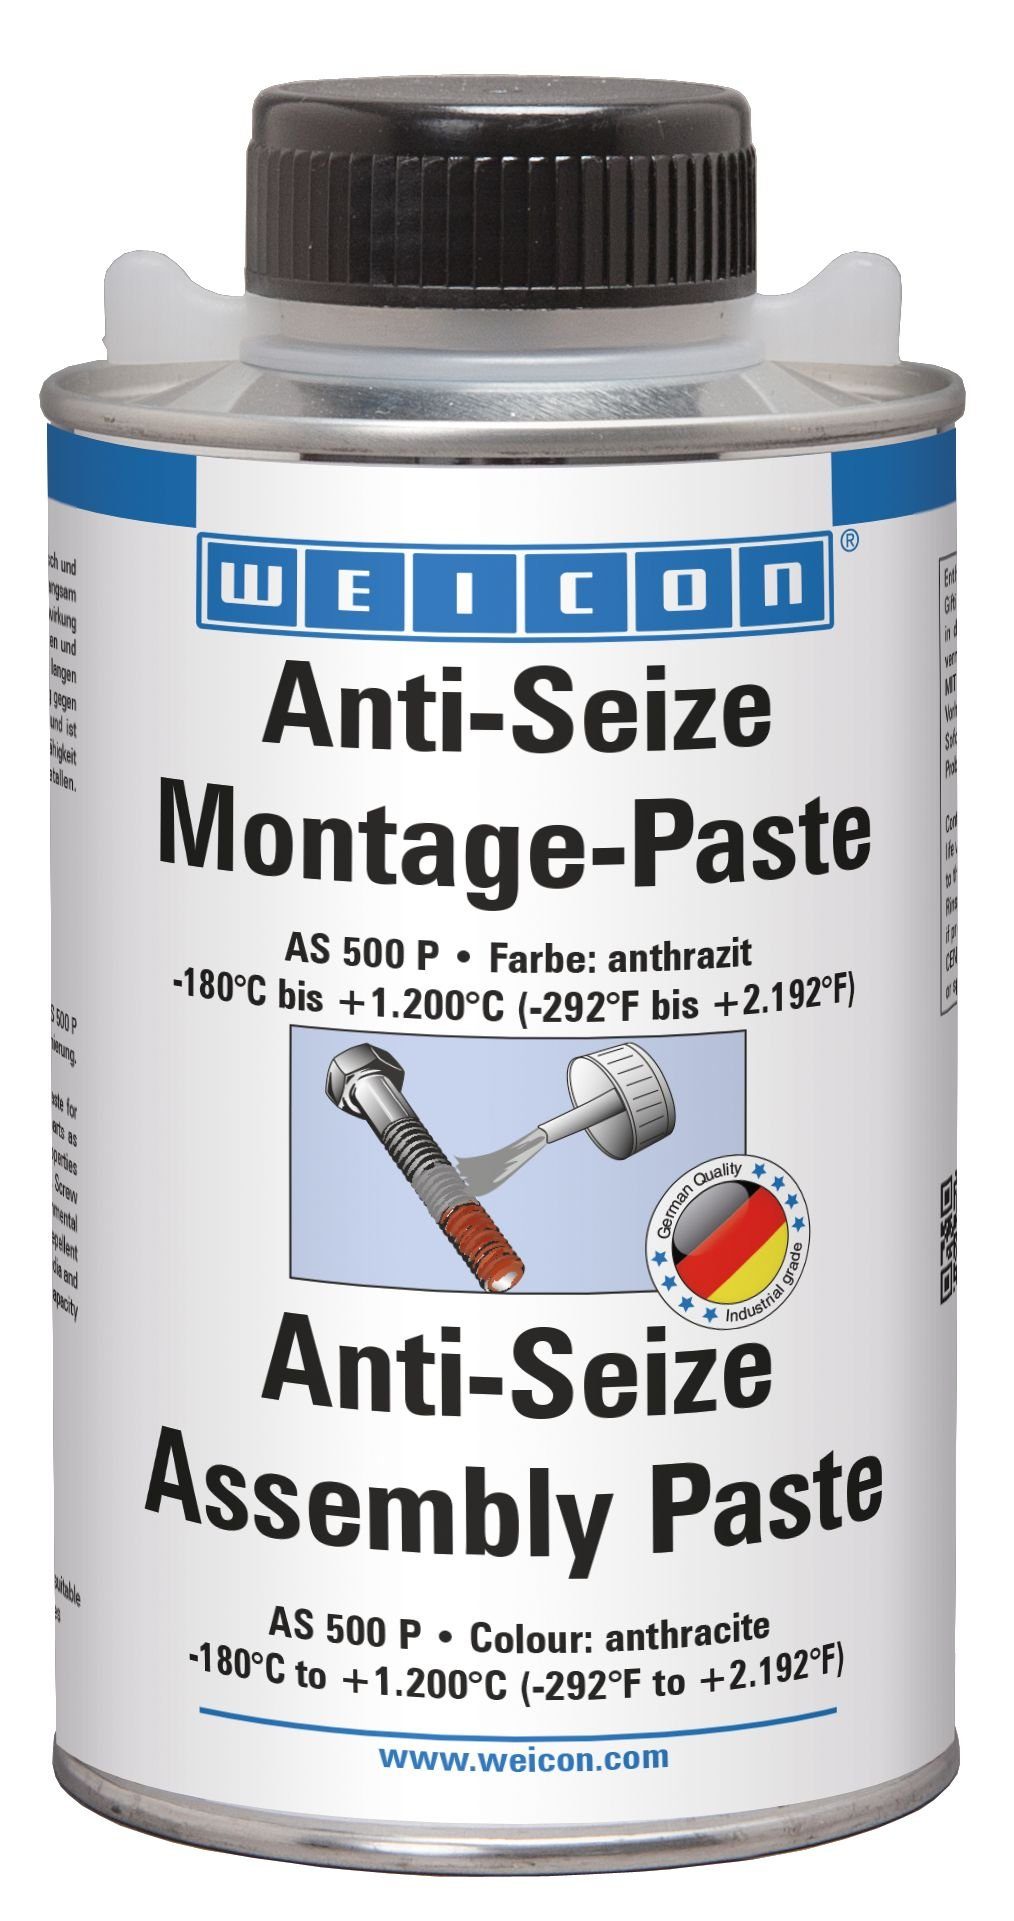 WEICON Montagepaste Anti-Seize Montagepaste, Schmier- und Trennmittelpaste, 500 g, Schutz-, Trenn- und Schmierstoff